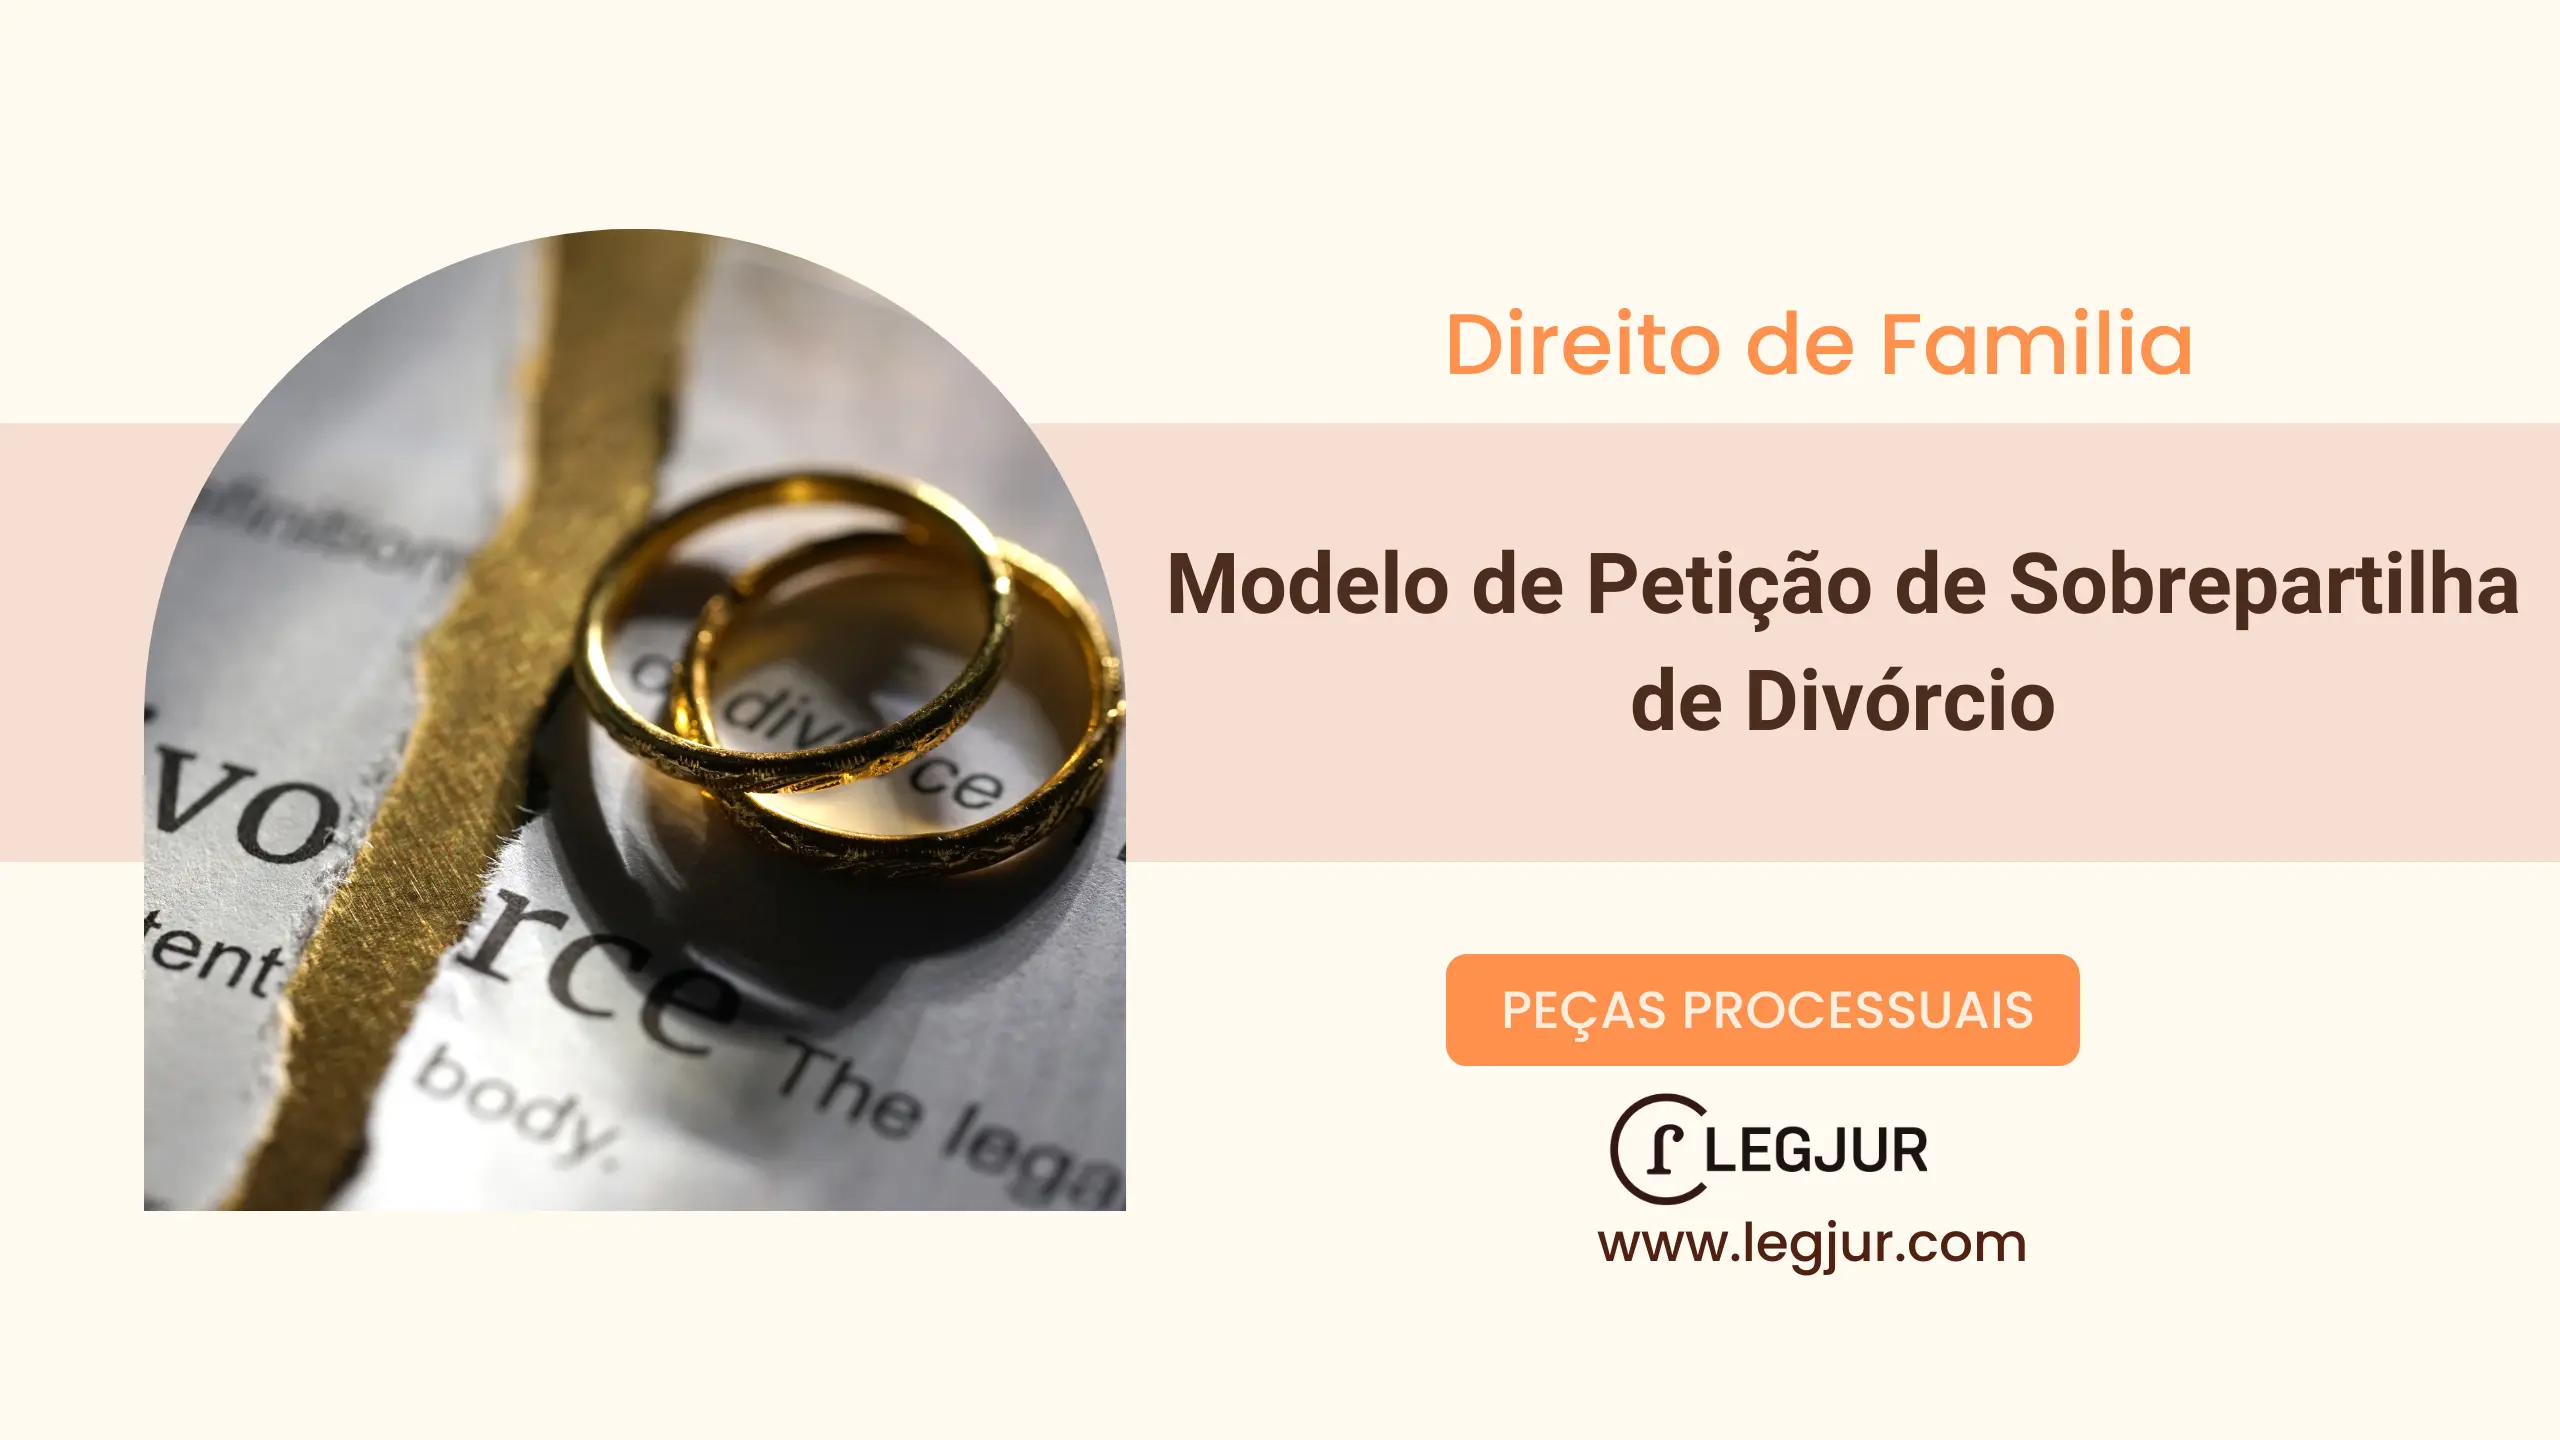 Modelo de Petição de Sobrepartilha de Divórcio